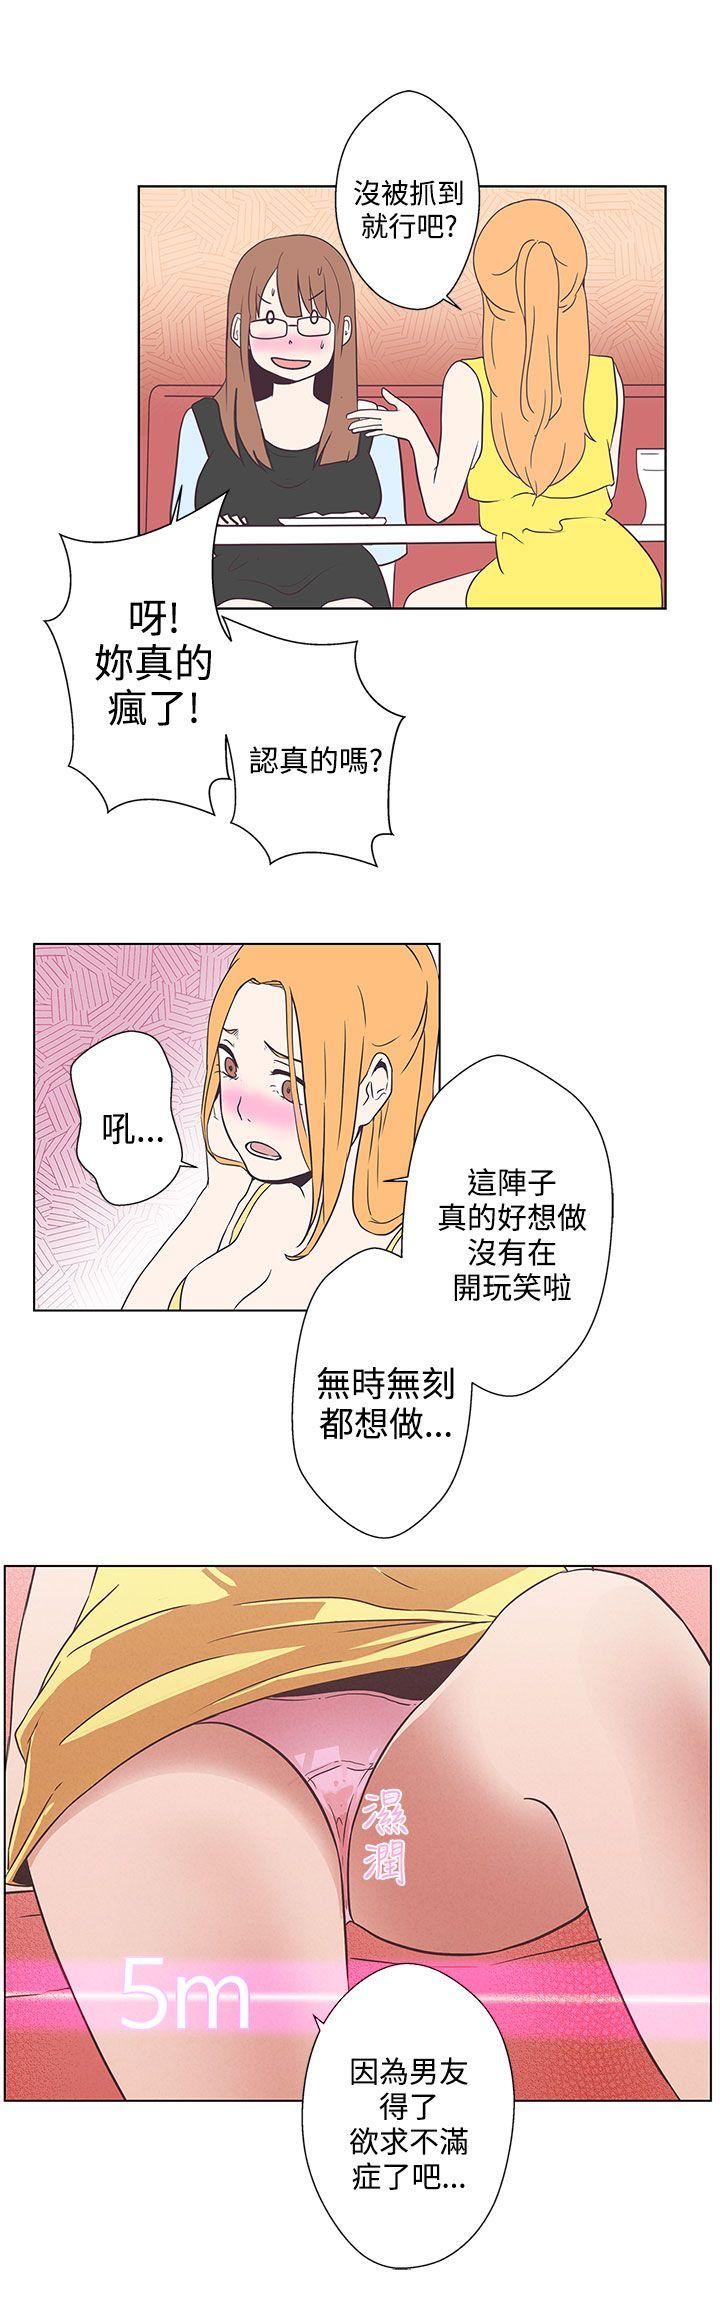 韩国污漫画 LOVE 愛的導航G 第6话 17